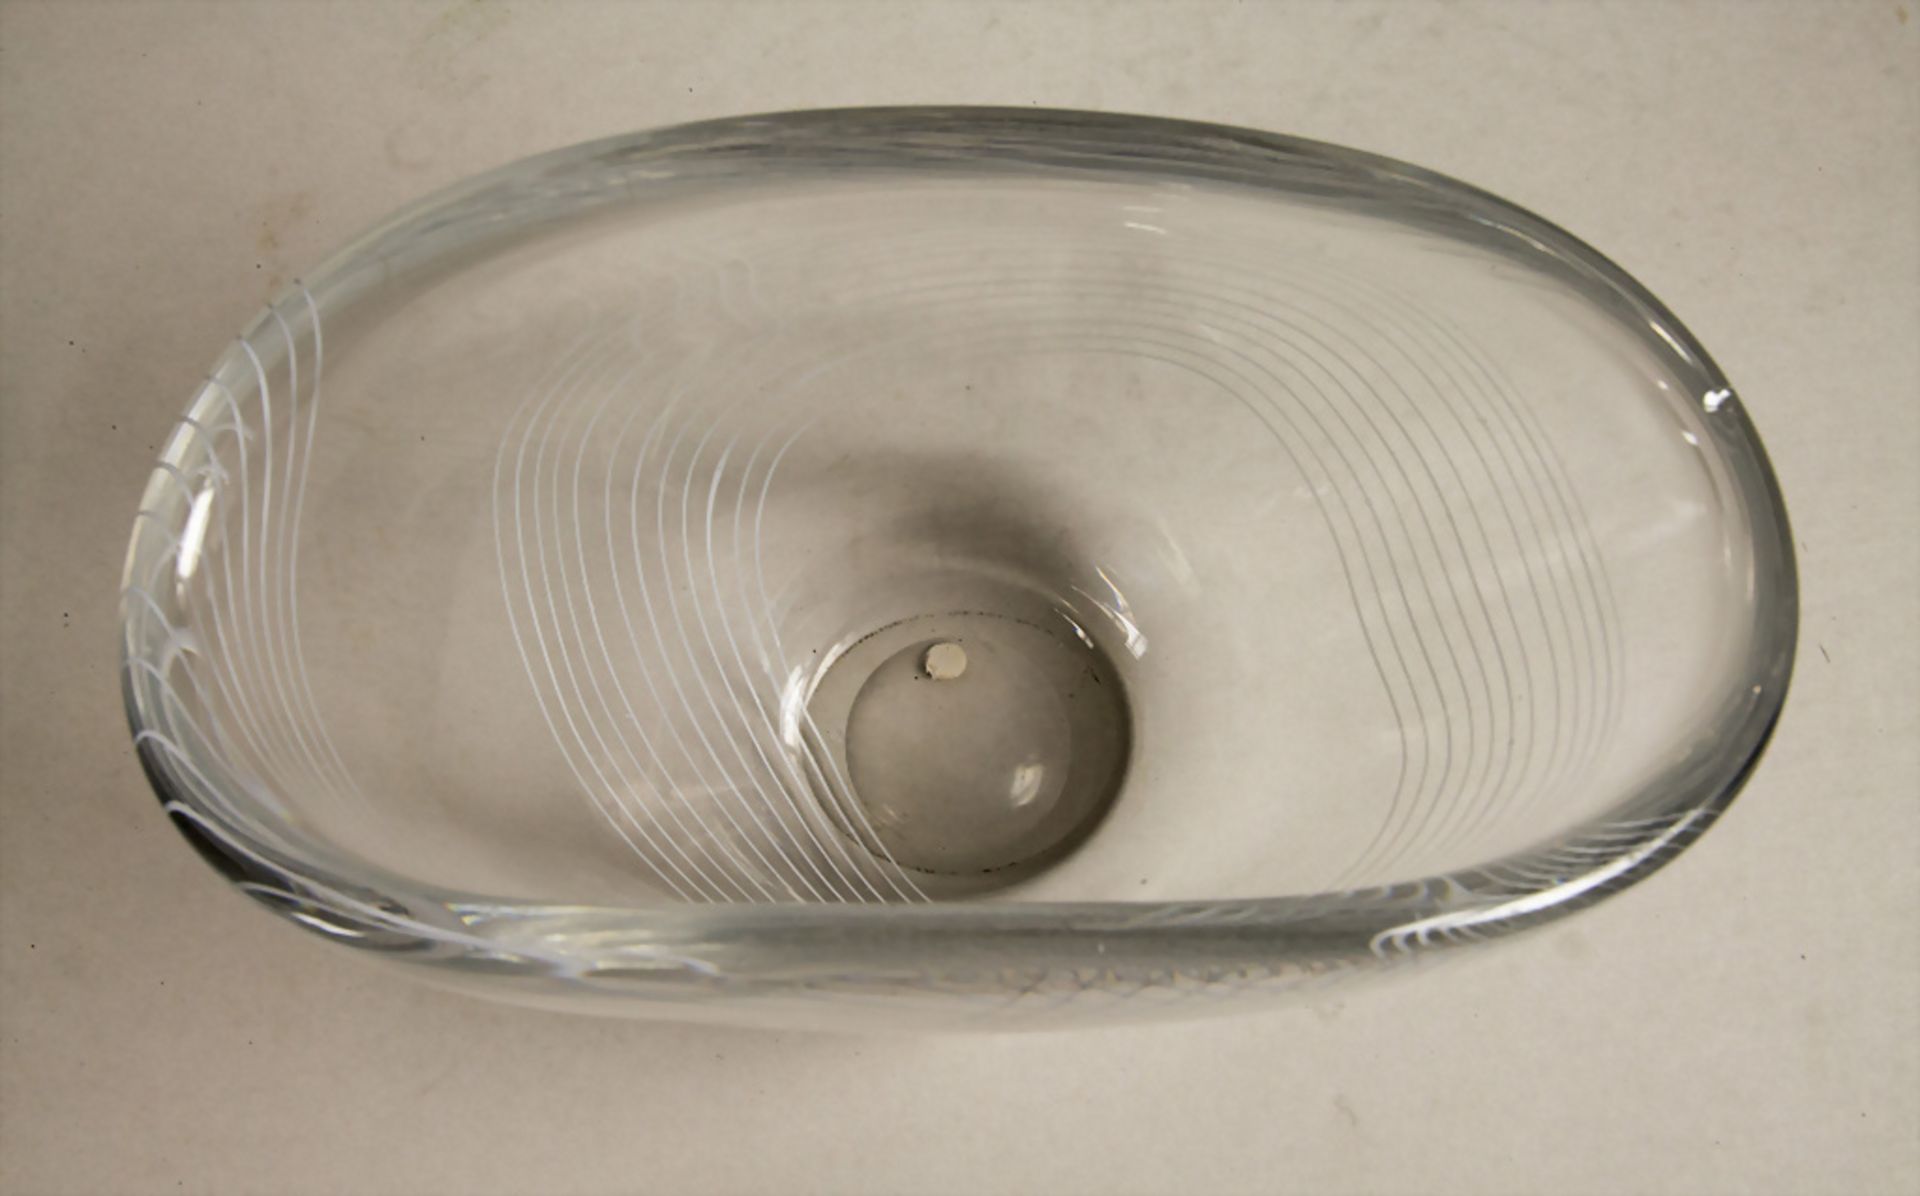 Glaszierschale / A decorative glass bowl, Edvard Halt, Kosta, Schweden, 50er Jahre - Image 5 of 6